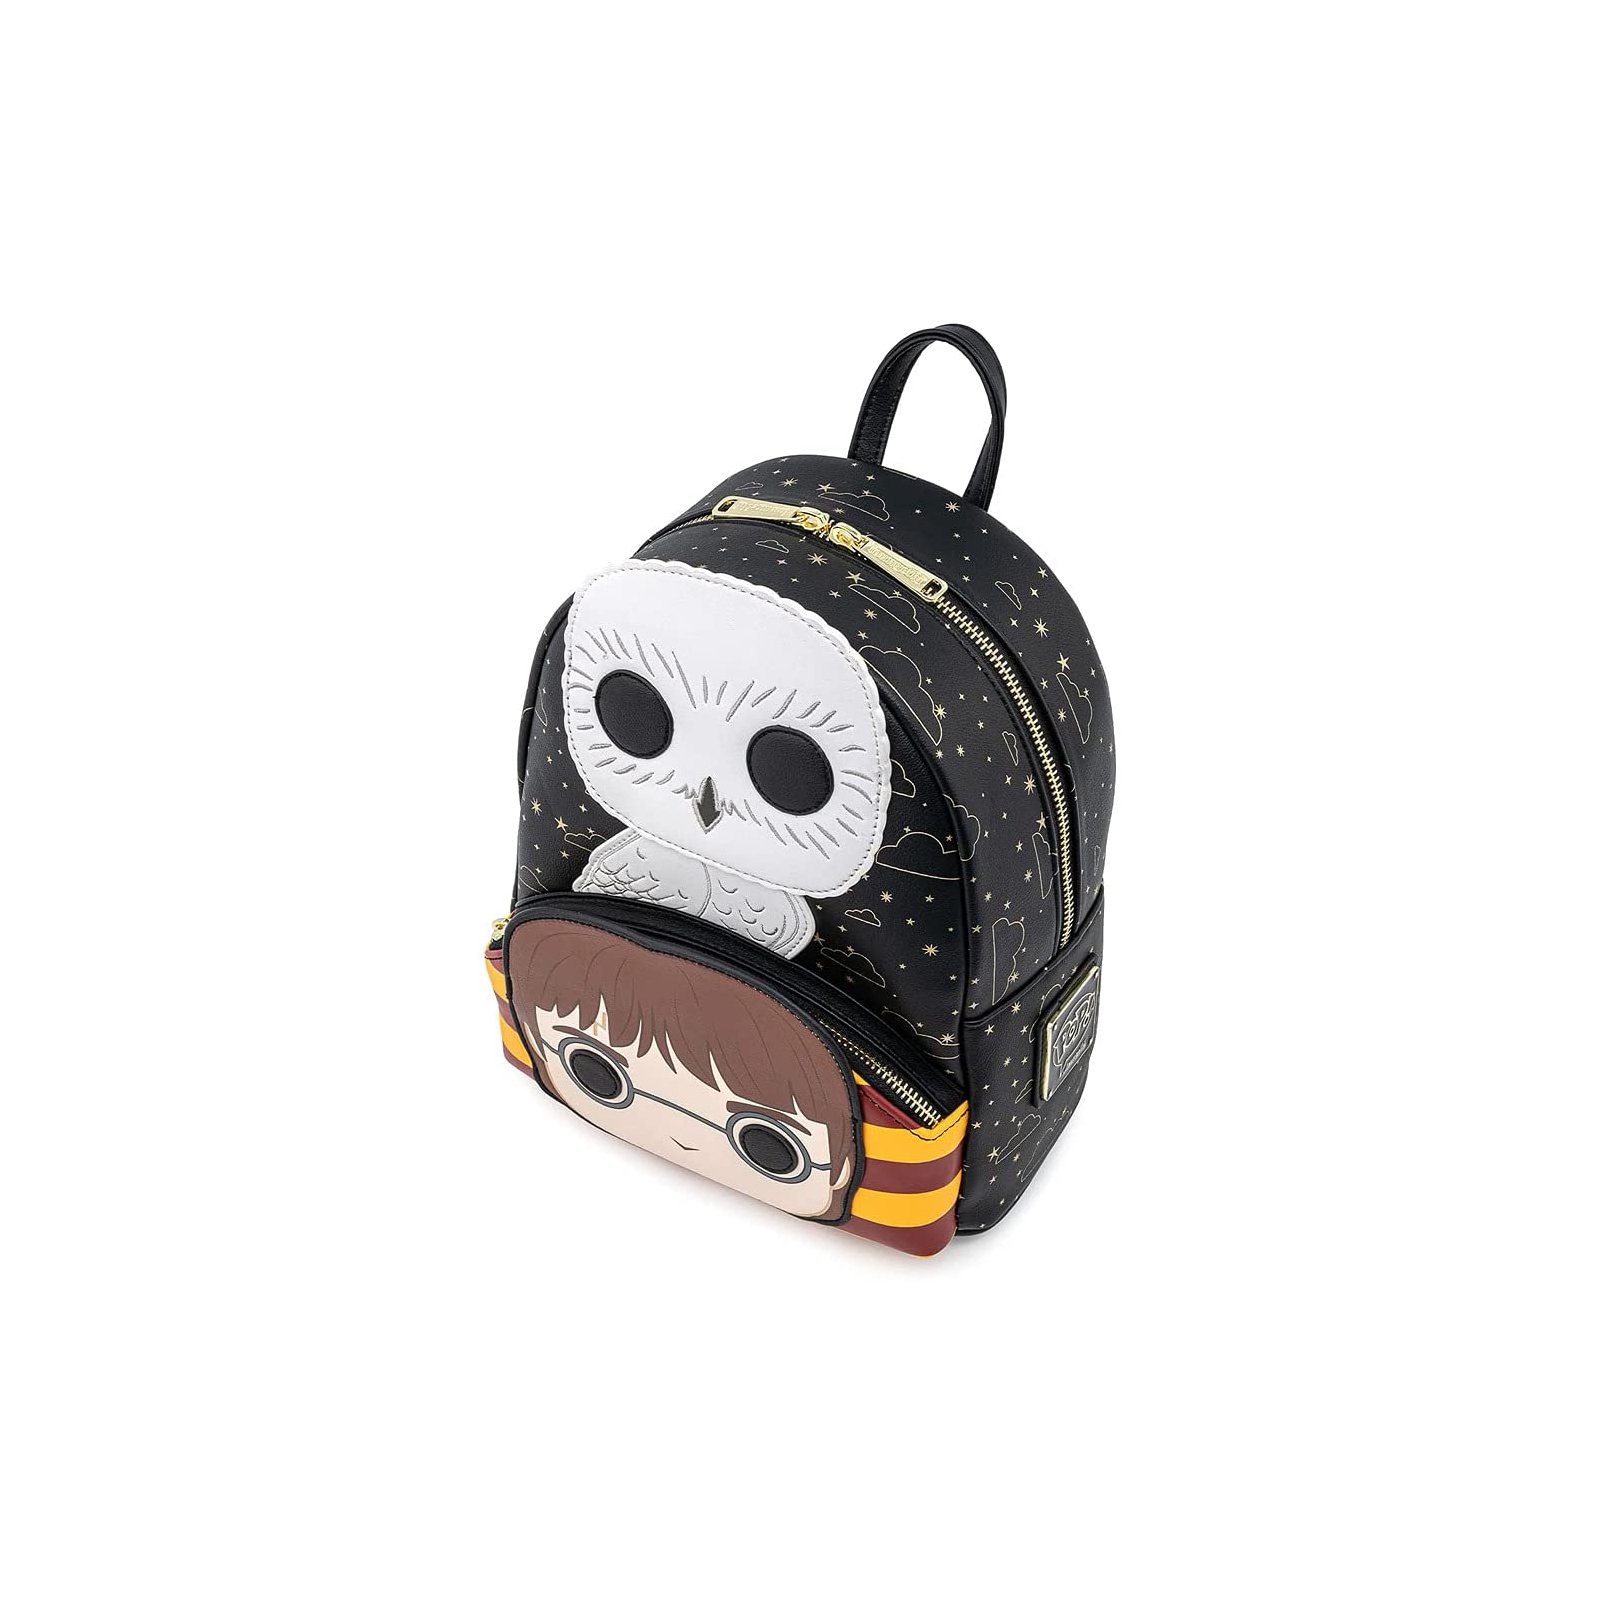 Рюкзак школьный Loungefly Harry Potter - Hedwig Cosplay Mini Backpack (HPBK0123) изображение 2